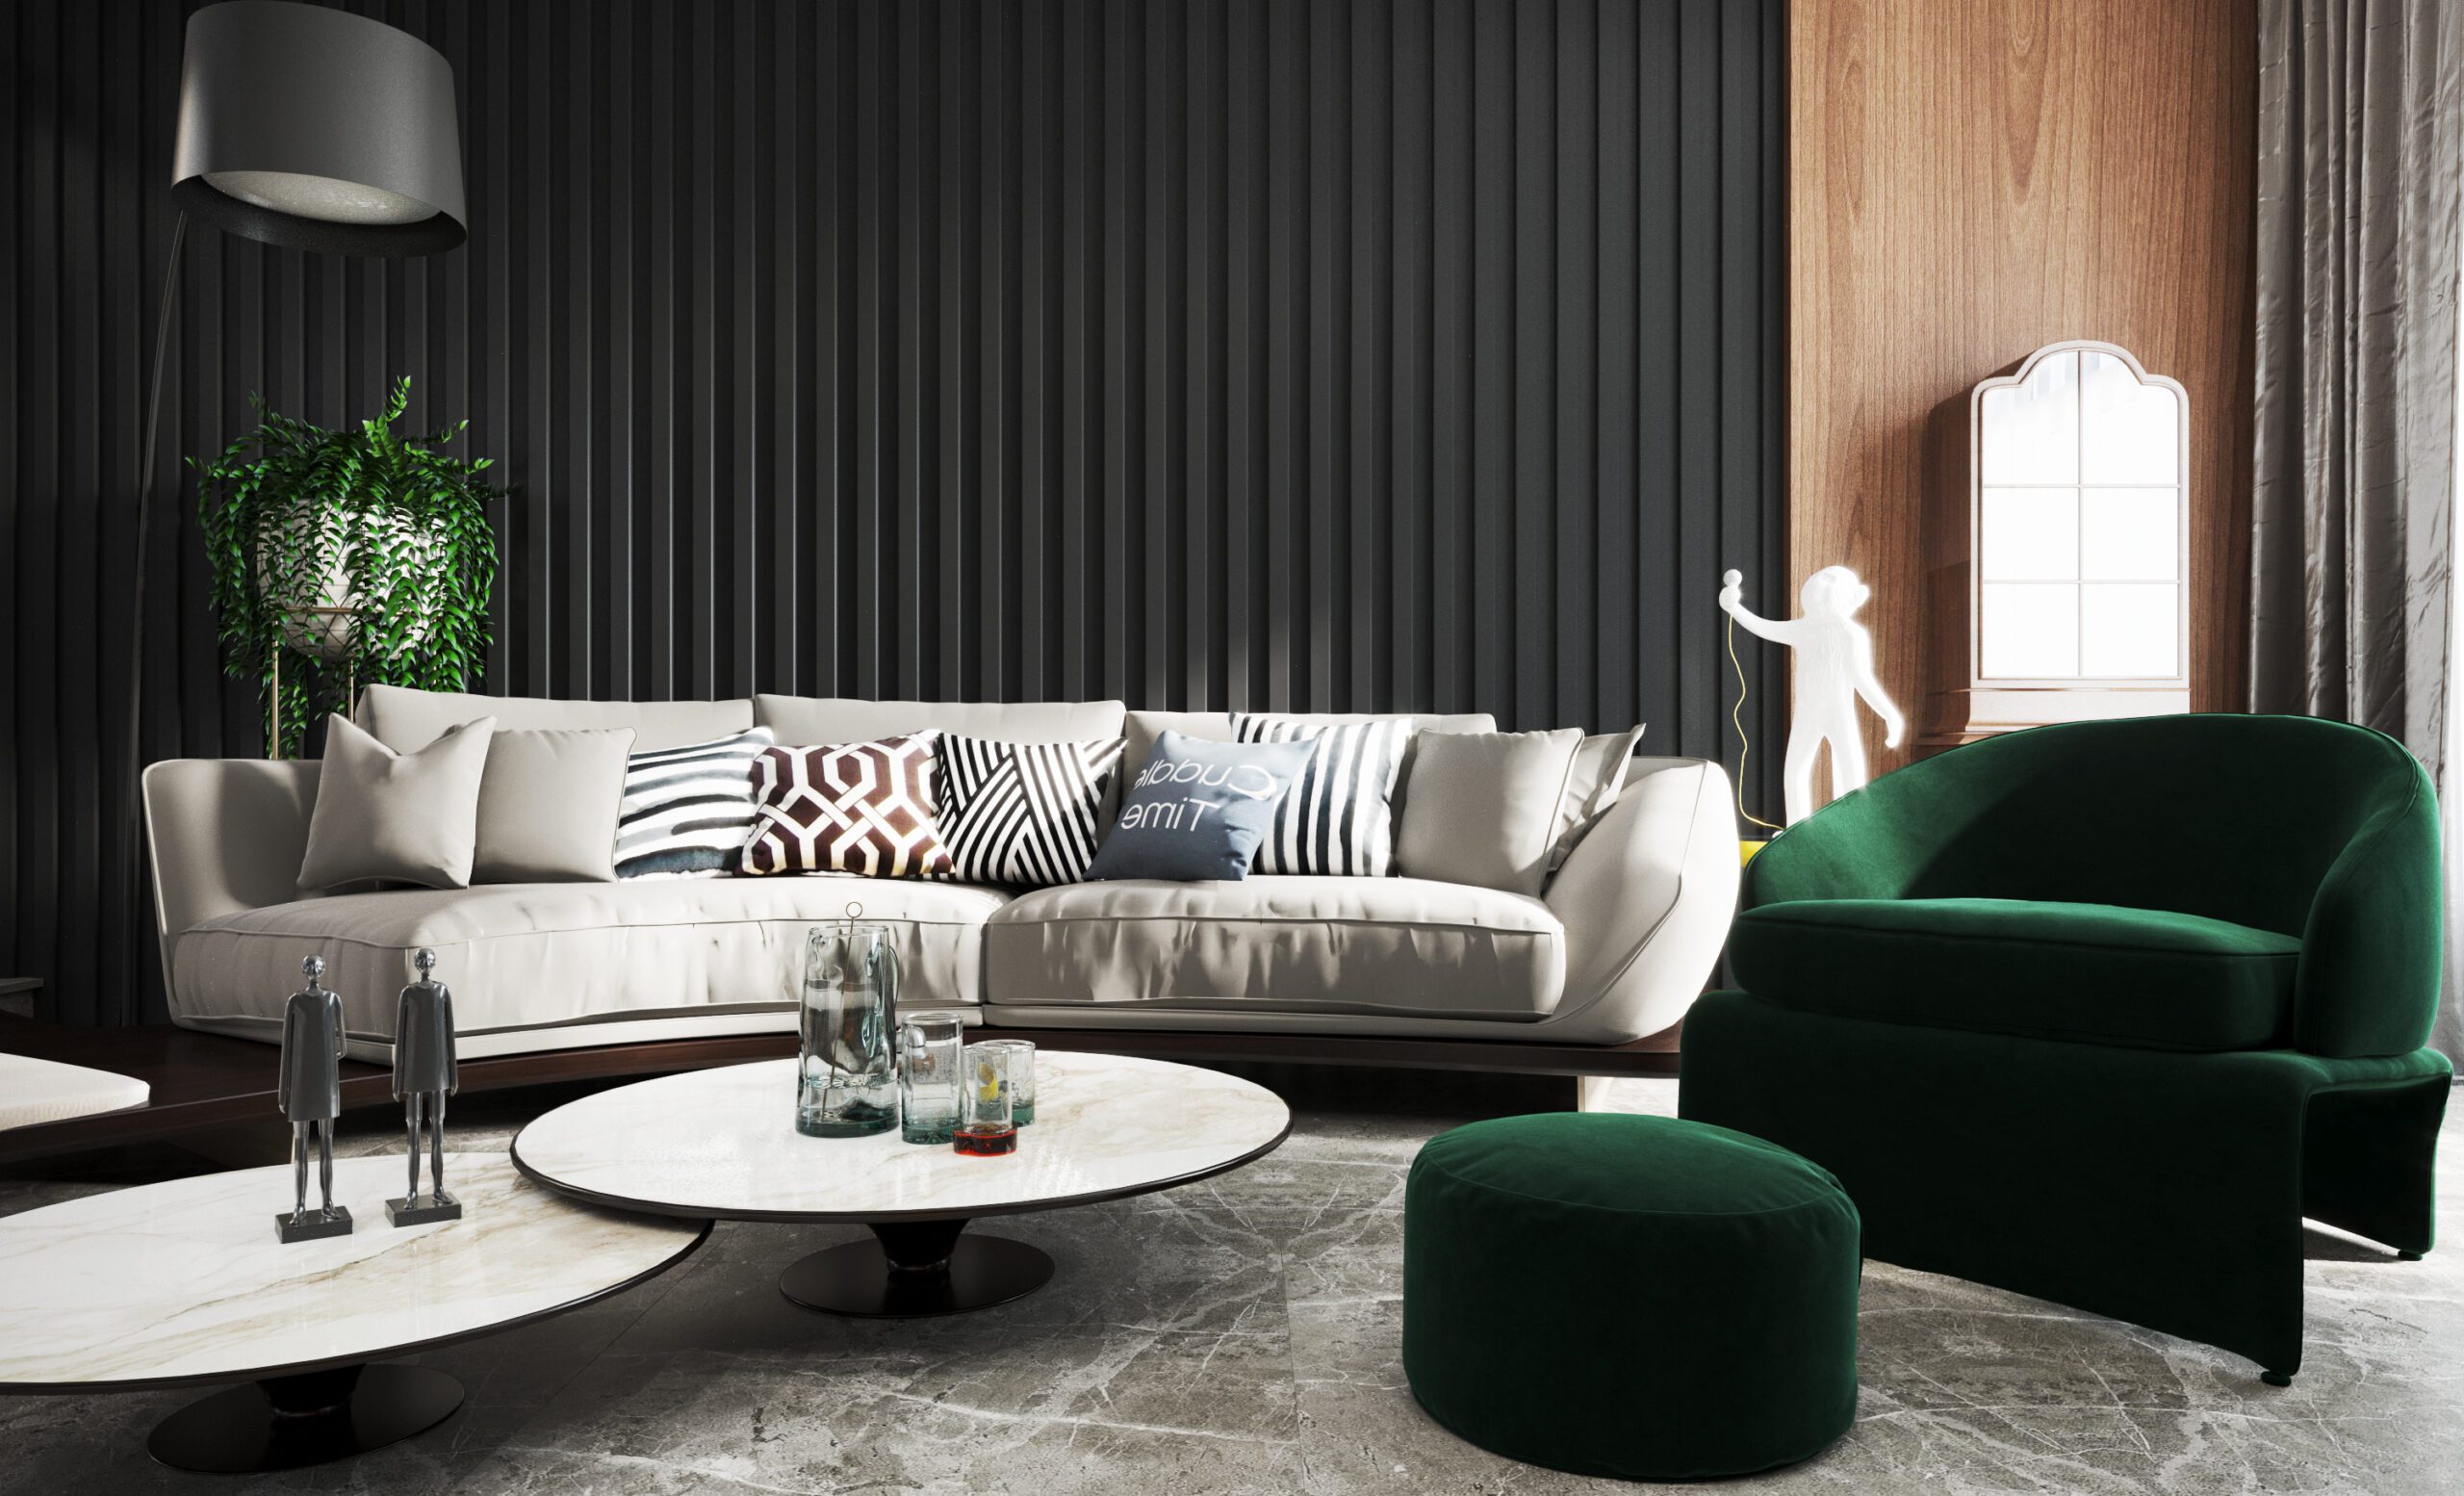 黑色沙發背牆與沙發形成對比色，也增加整體層次感，顯得沉穩大器且協調